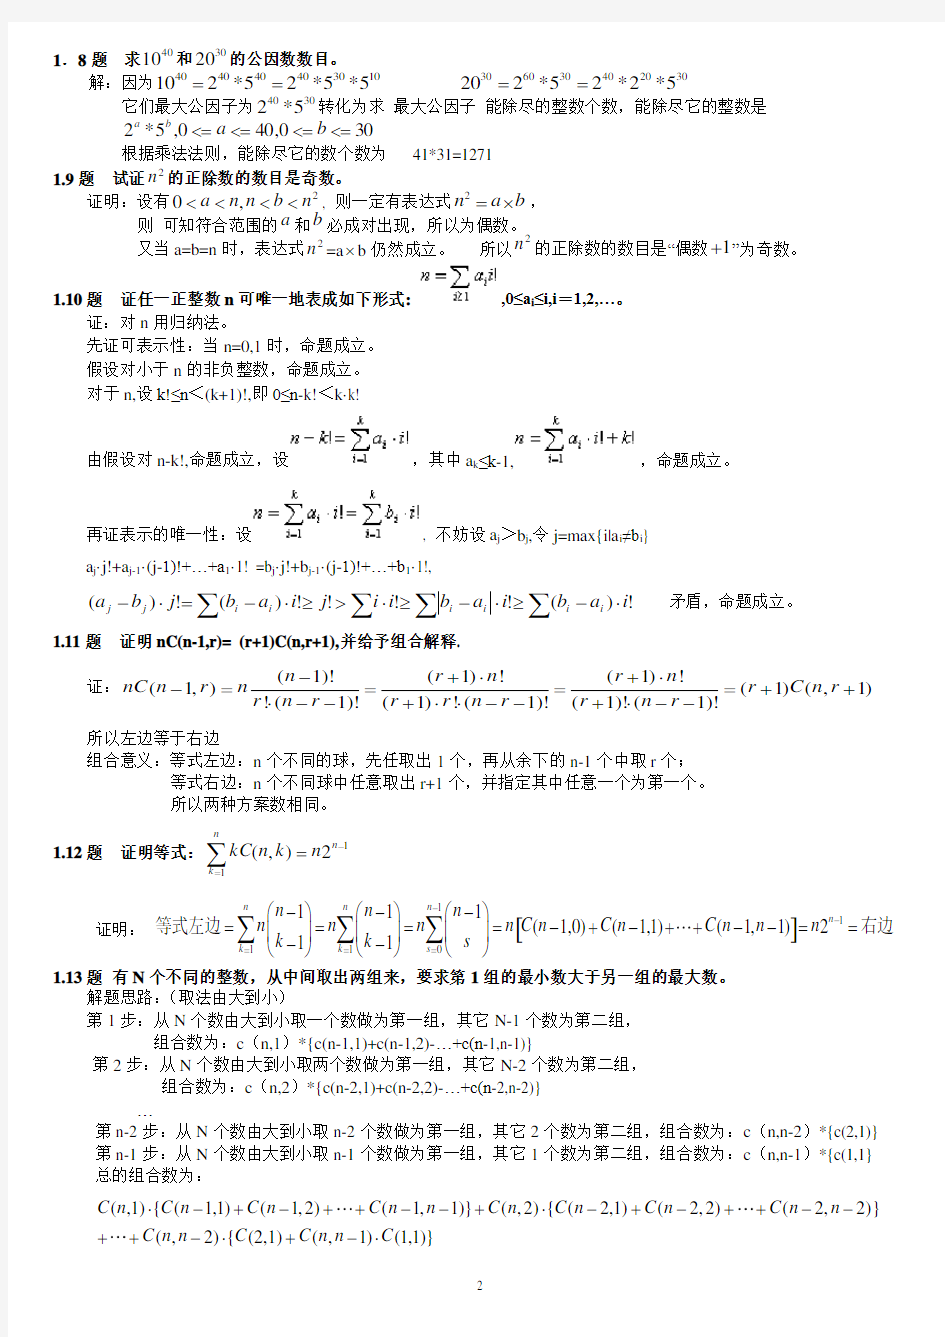 组合数学参考答案(卢开澄第四版) - 修改版